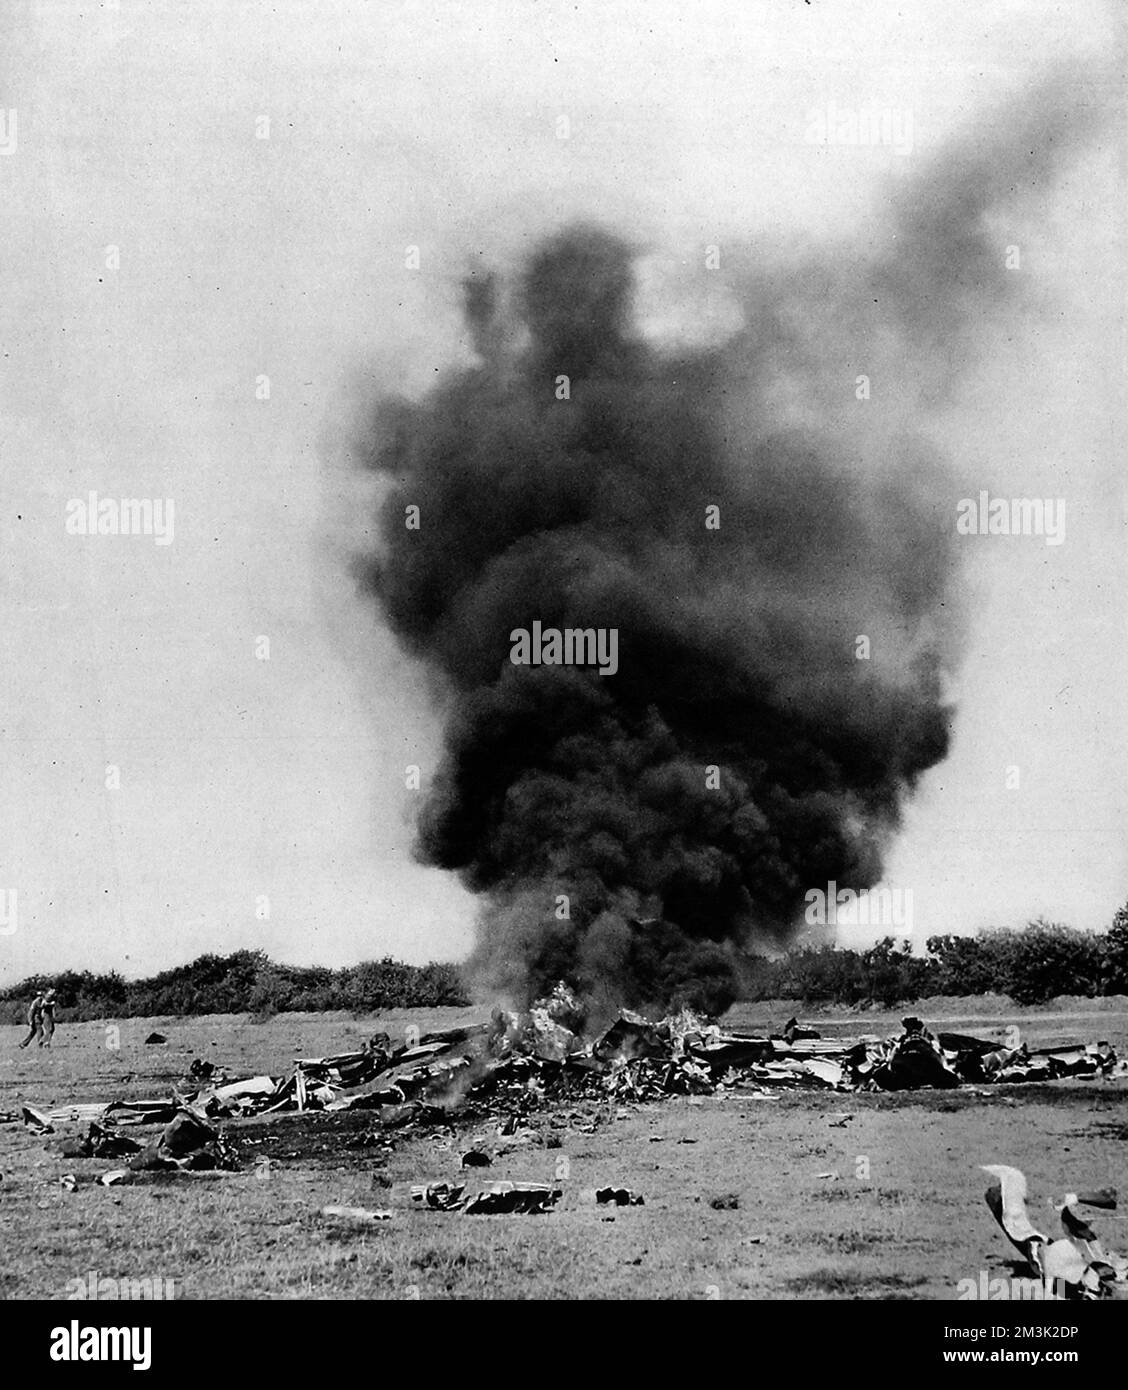 Photographie montrant l'épave brûlante d'un avion de chasse allemand qui s'était écrasé dans le sud-est de l'Angleterre pendant la bataille d'Angleterre, août 1940. Date : août 1940 Banque D'Images